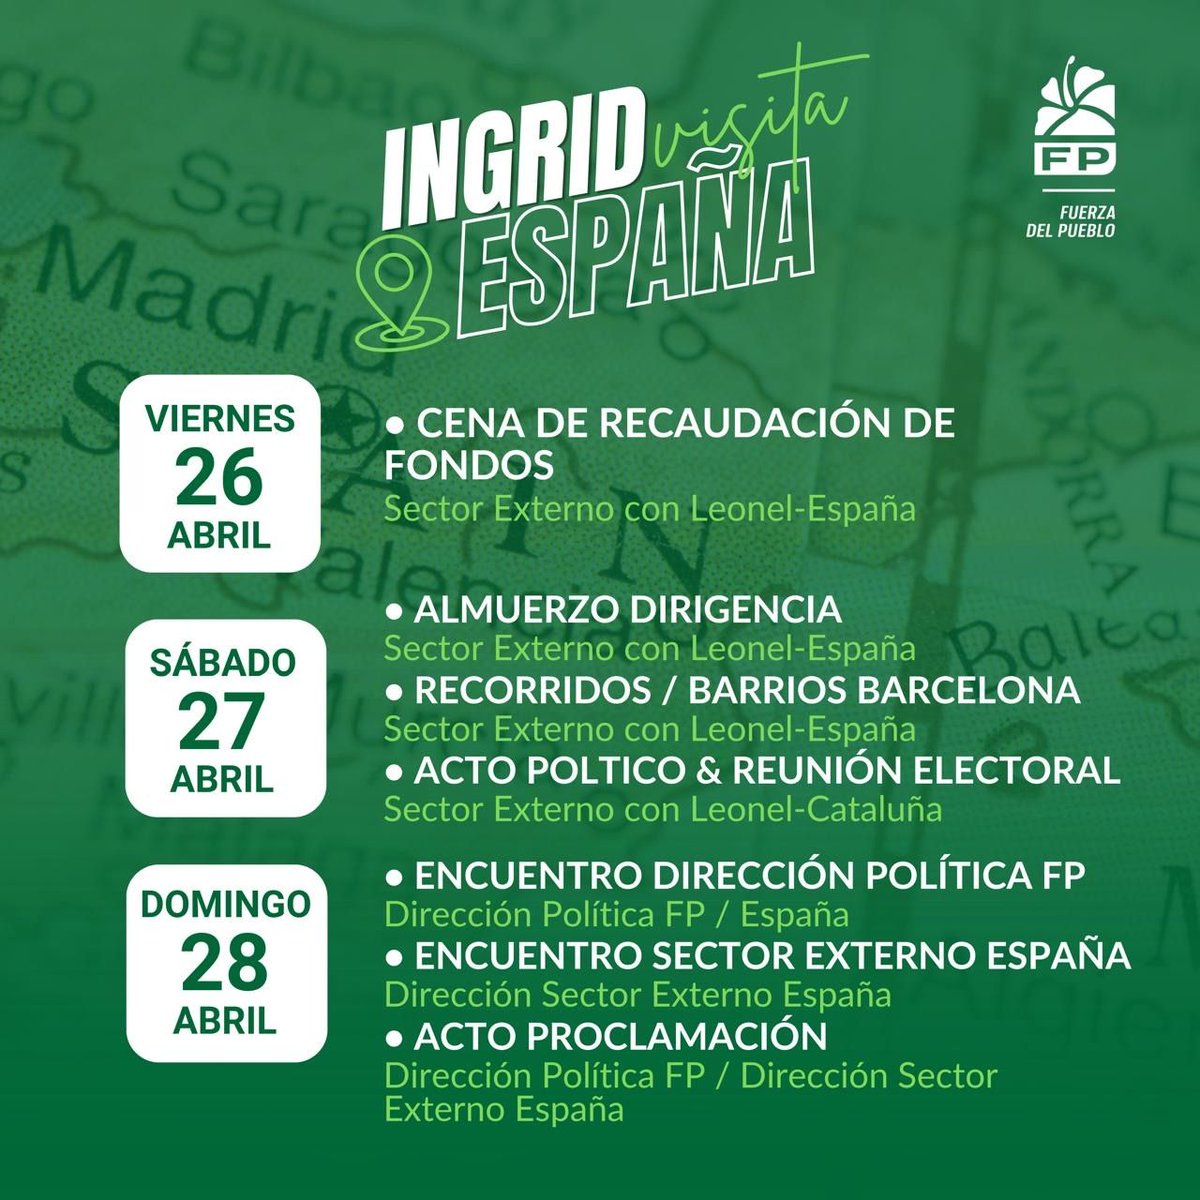 Agenda de nuestra candidata a la vicepresidencia, @ingridmendozap, en España. Con @LeonelFernandez e @ingridmendozap GANAREMOS.